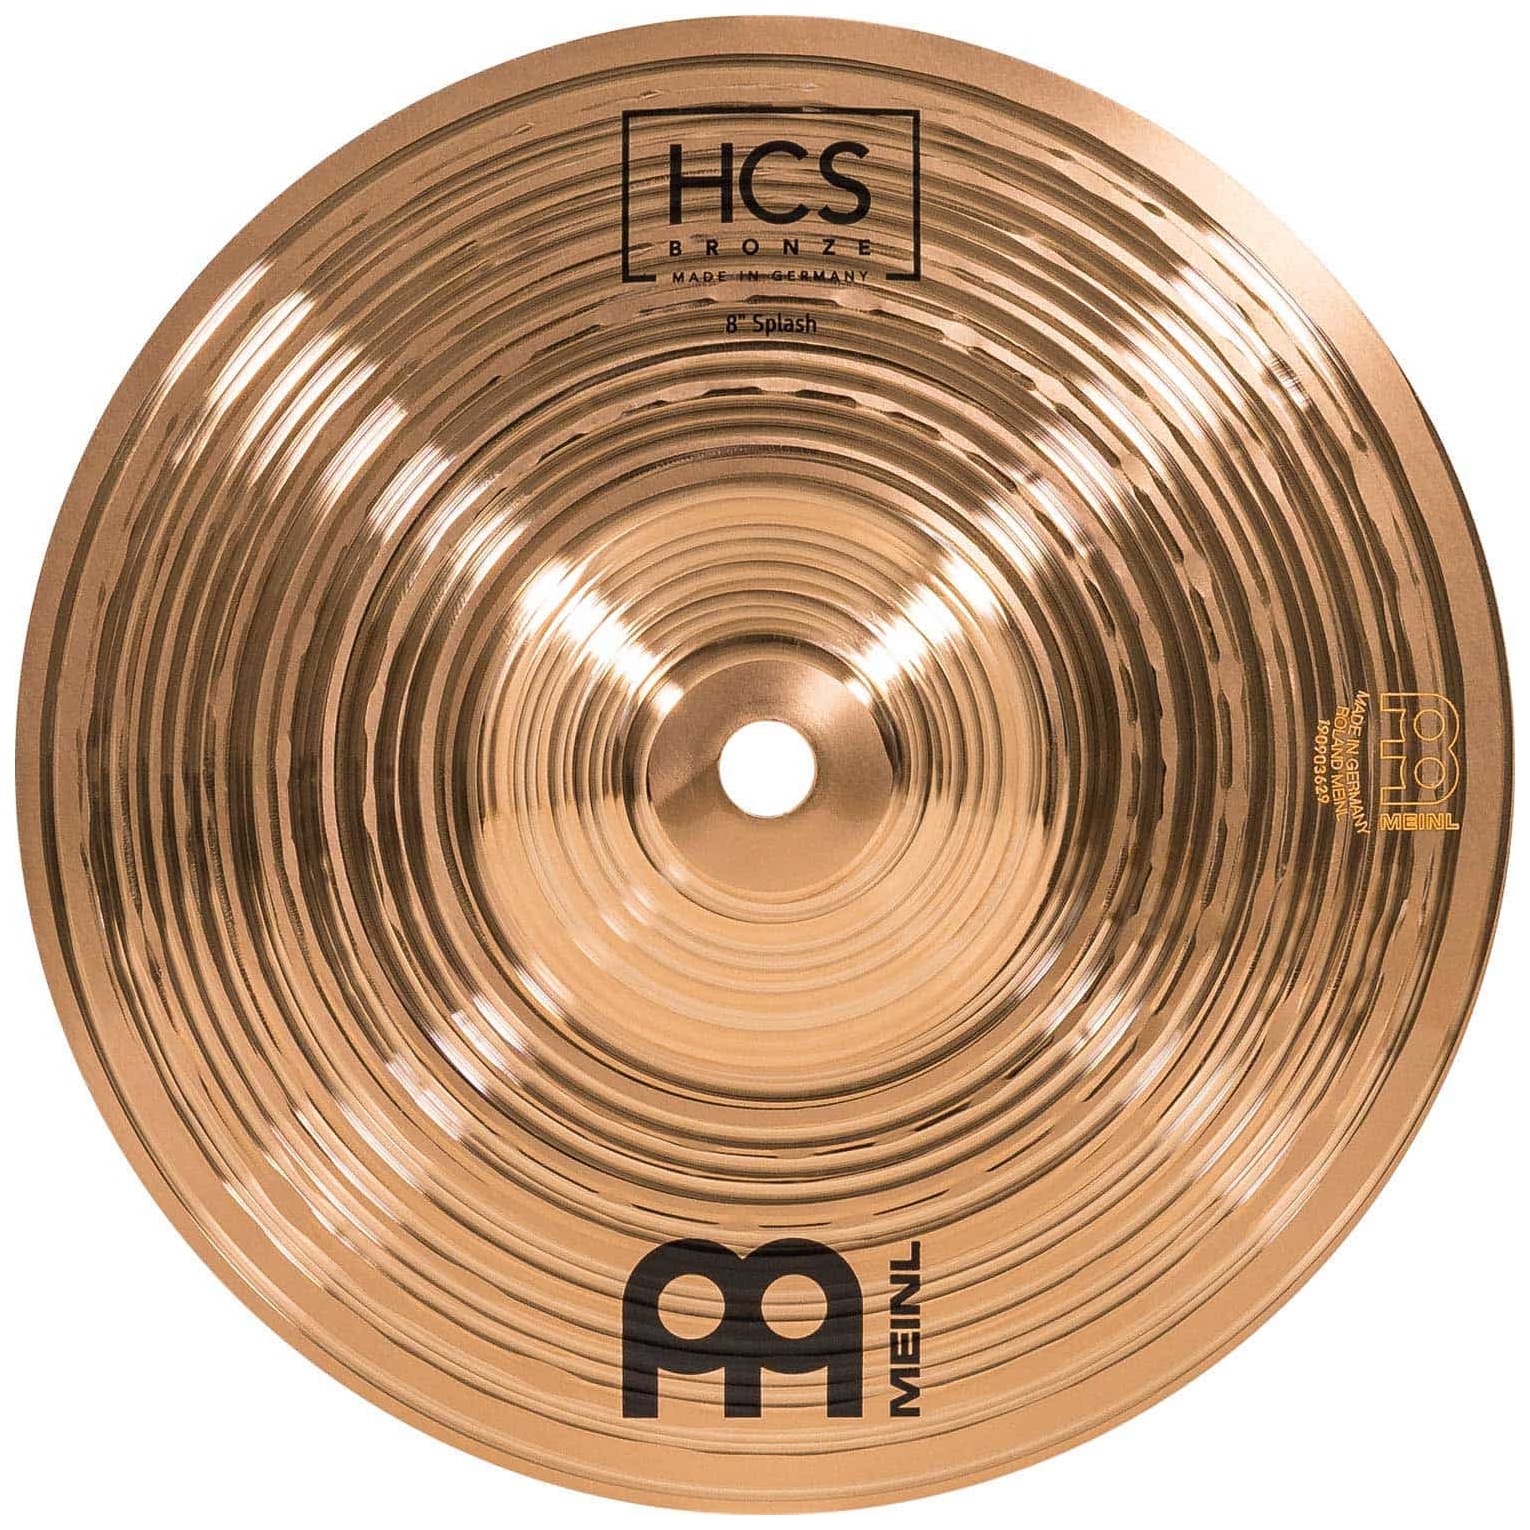 Meinl Cymbals HCSB8S - 8" HCS Bronze Splash 